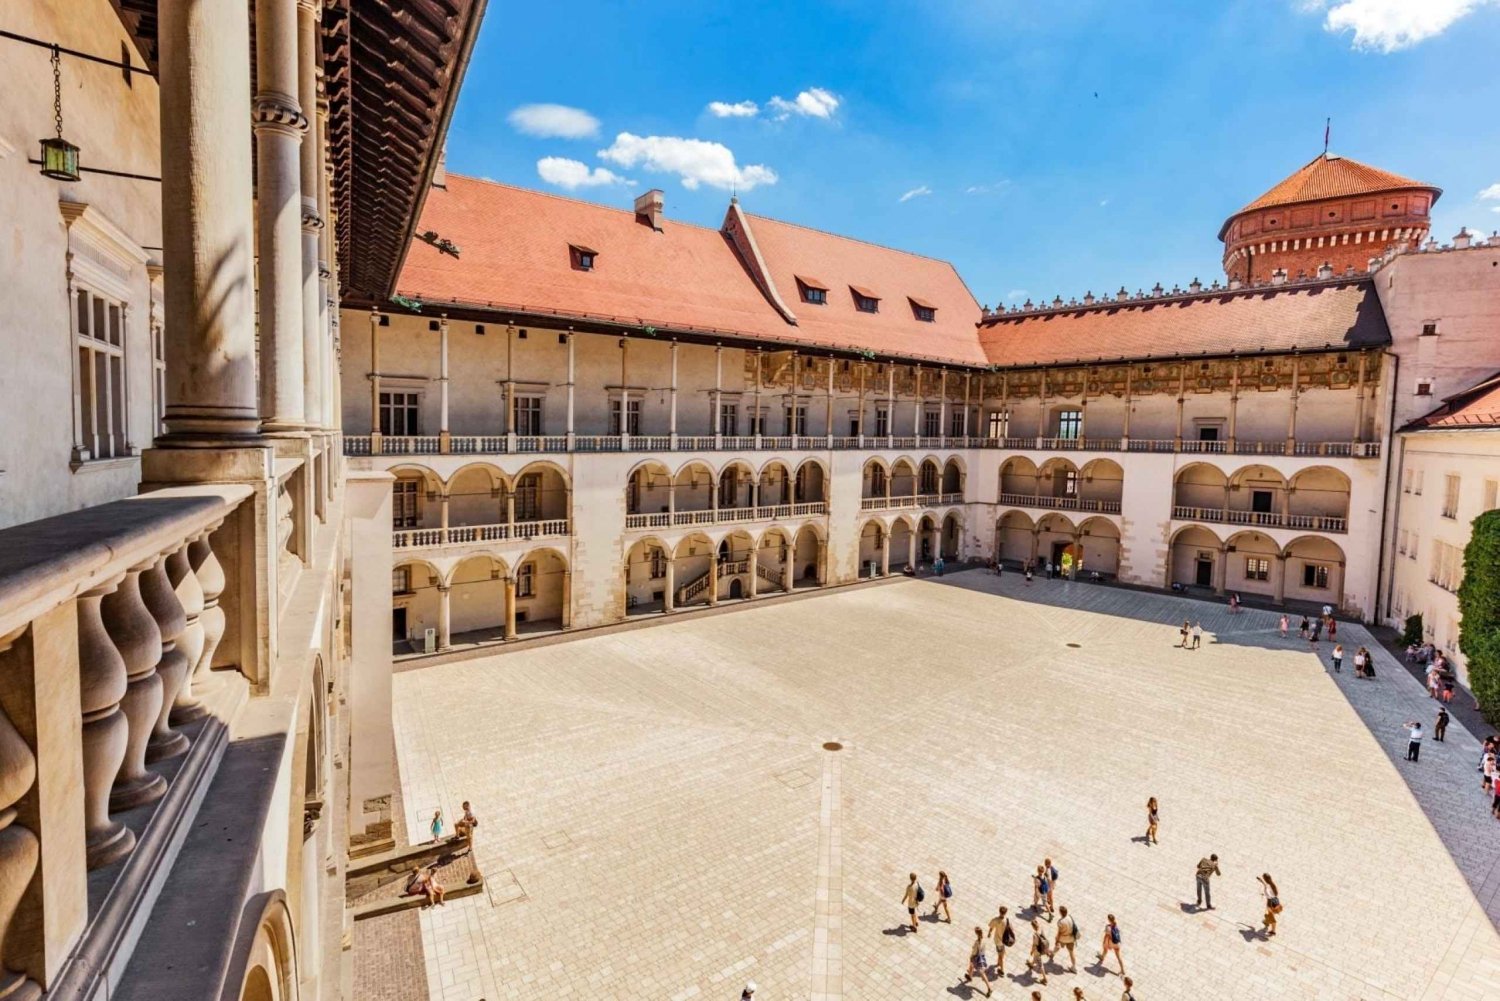 Cracóvia: visita guiada ao Castelo de Wawel e à colina sem fila